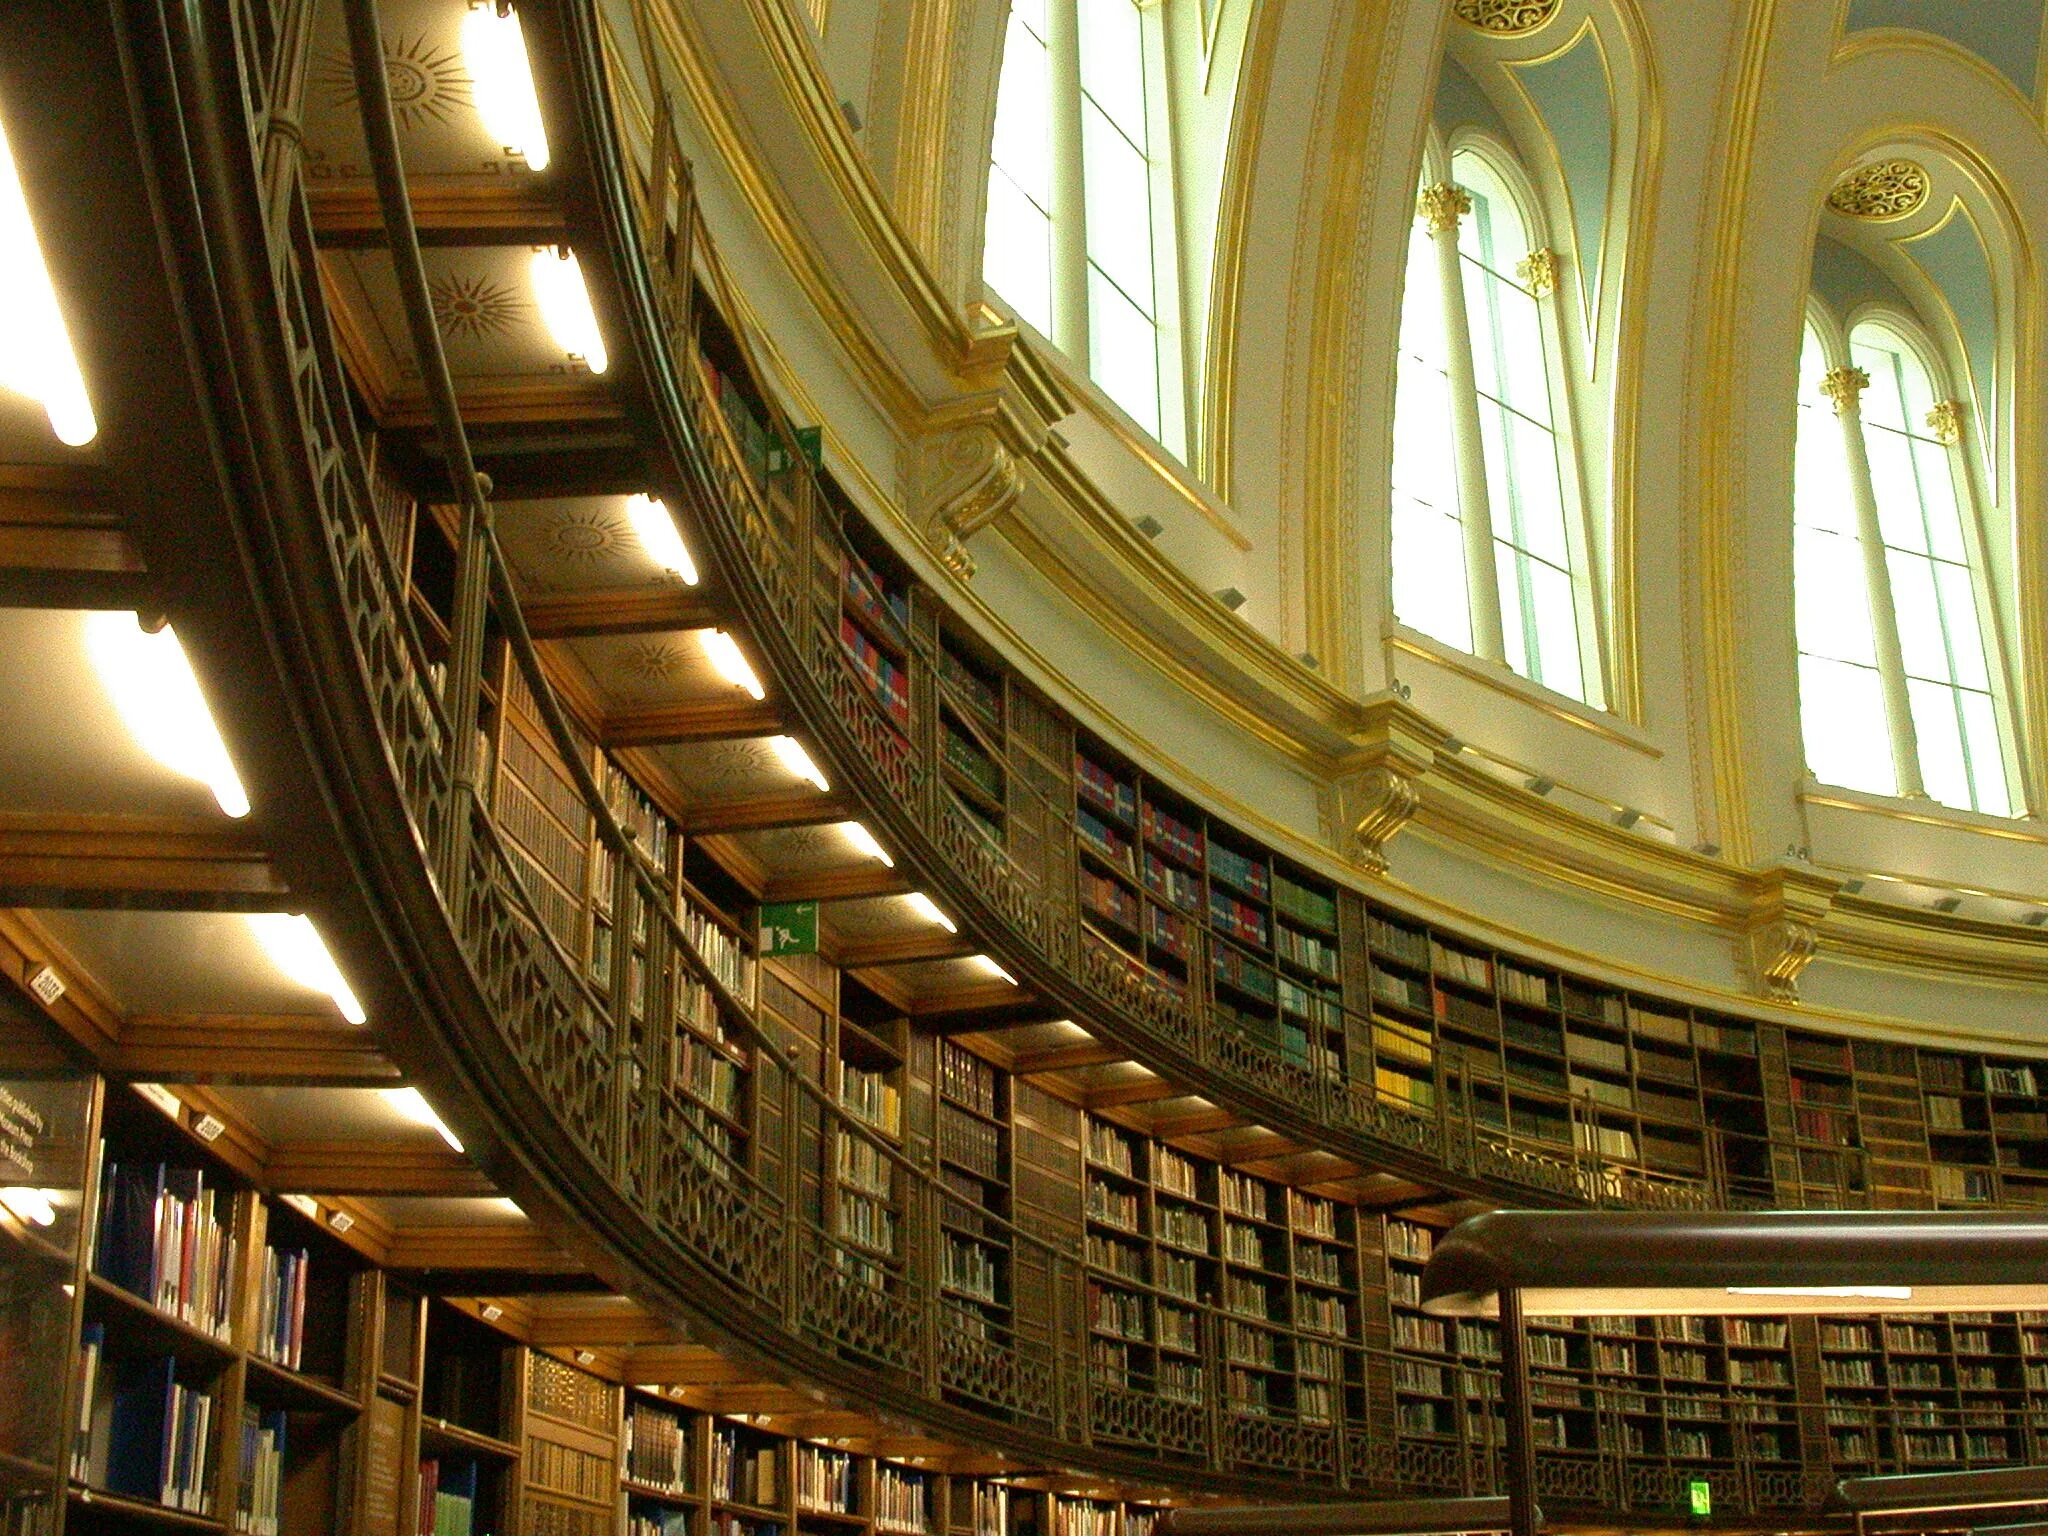 Attachment library. Библиотека британского музея в Лондоне. Читальный зал британского музея в Лондоне. Британский музей Лондон читательный зал. Библиотеки британского музея 1753.